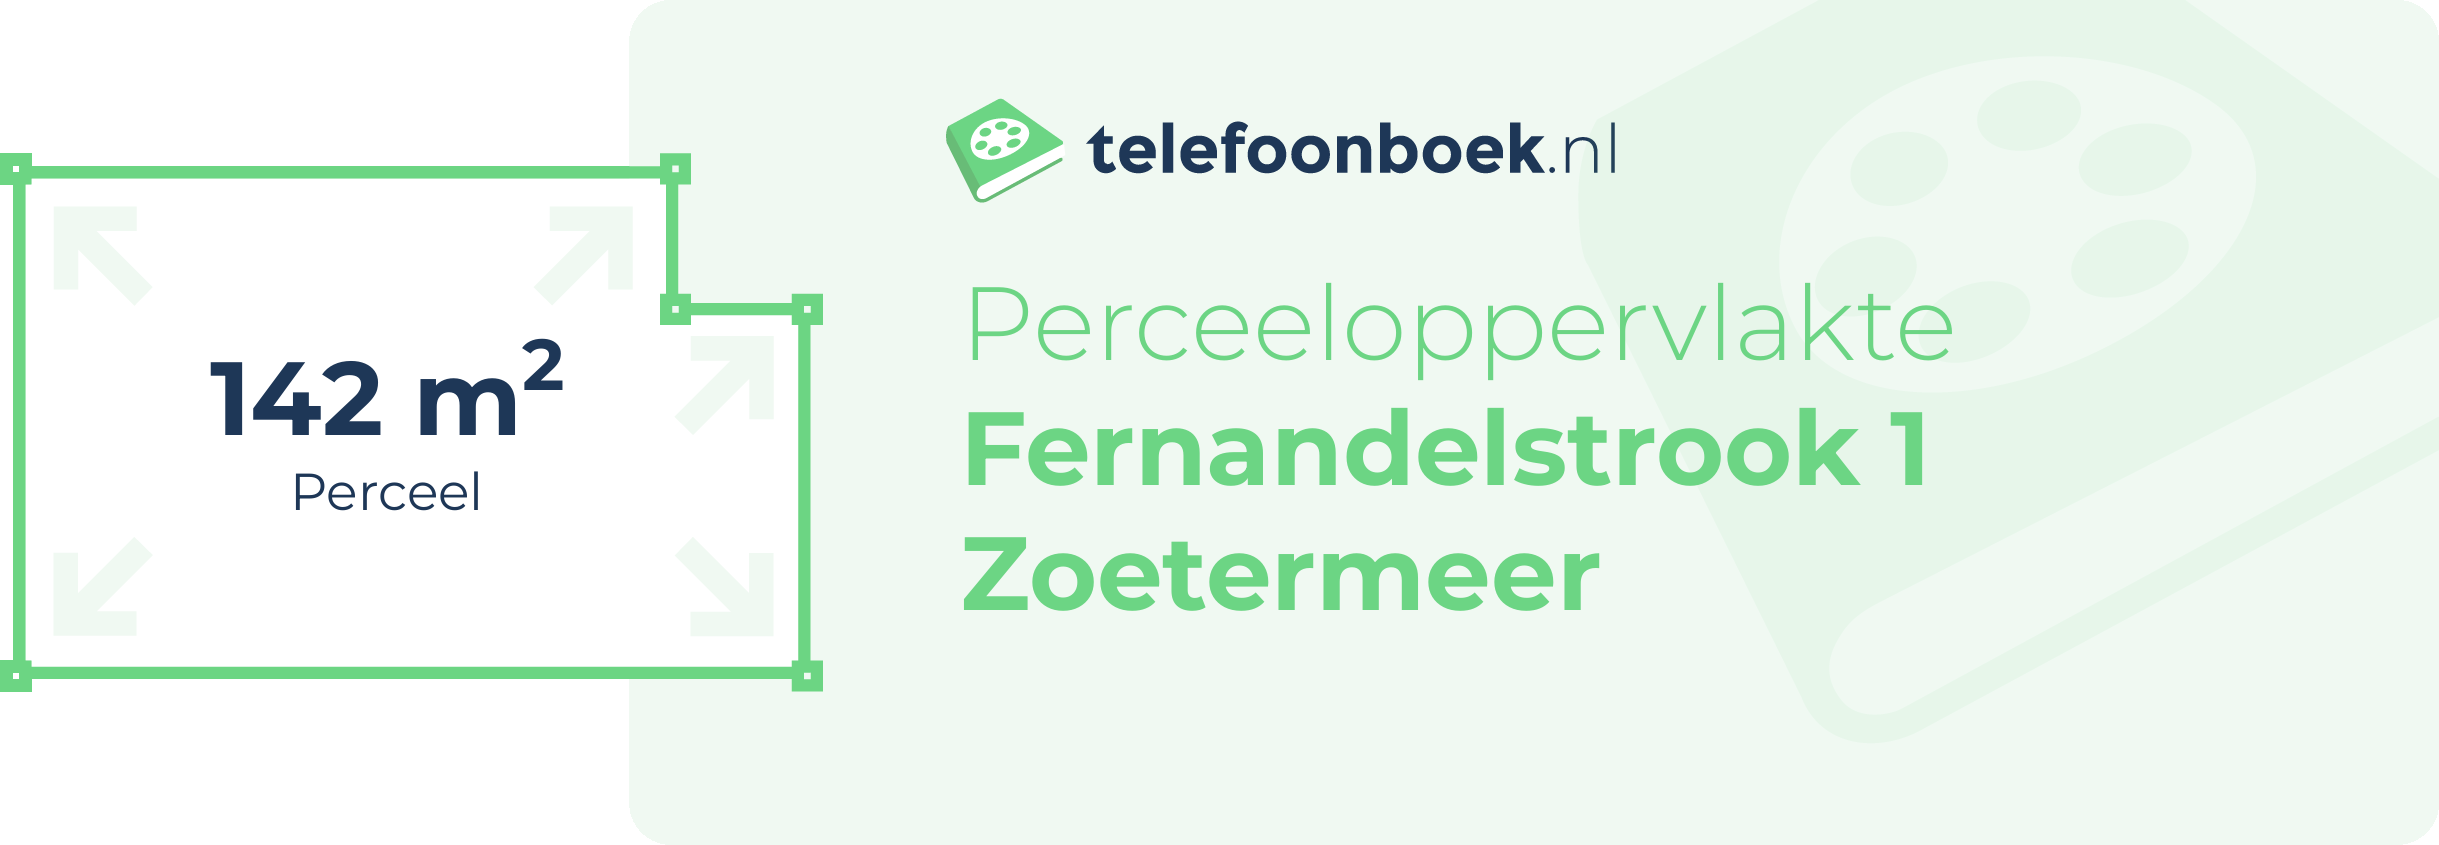 Perceeloppervlakte Fernandelstrook 1 Zoetermeer